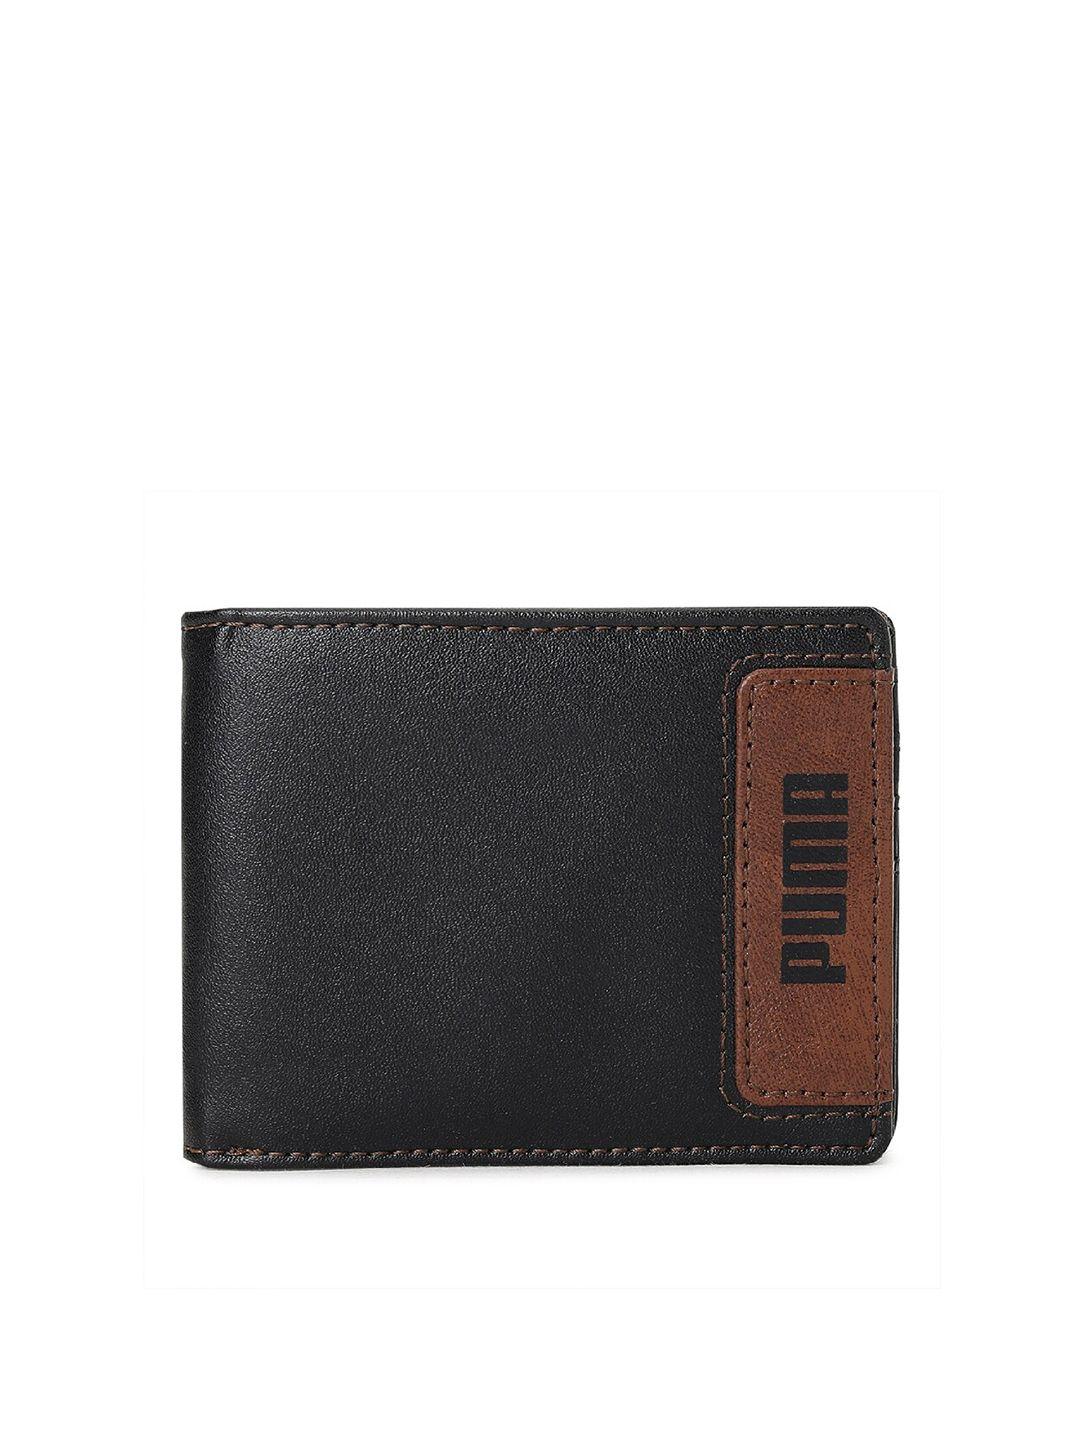 puma-men-black-&-brown-geometric-two-fold-wallet